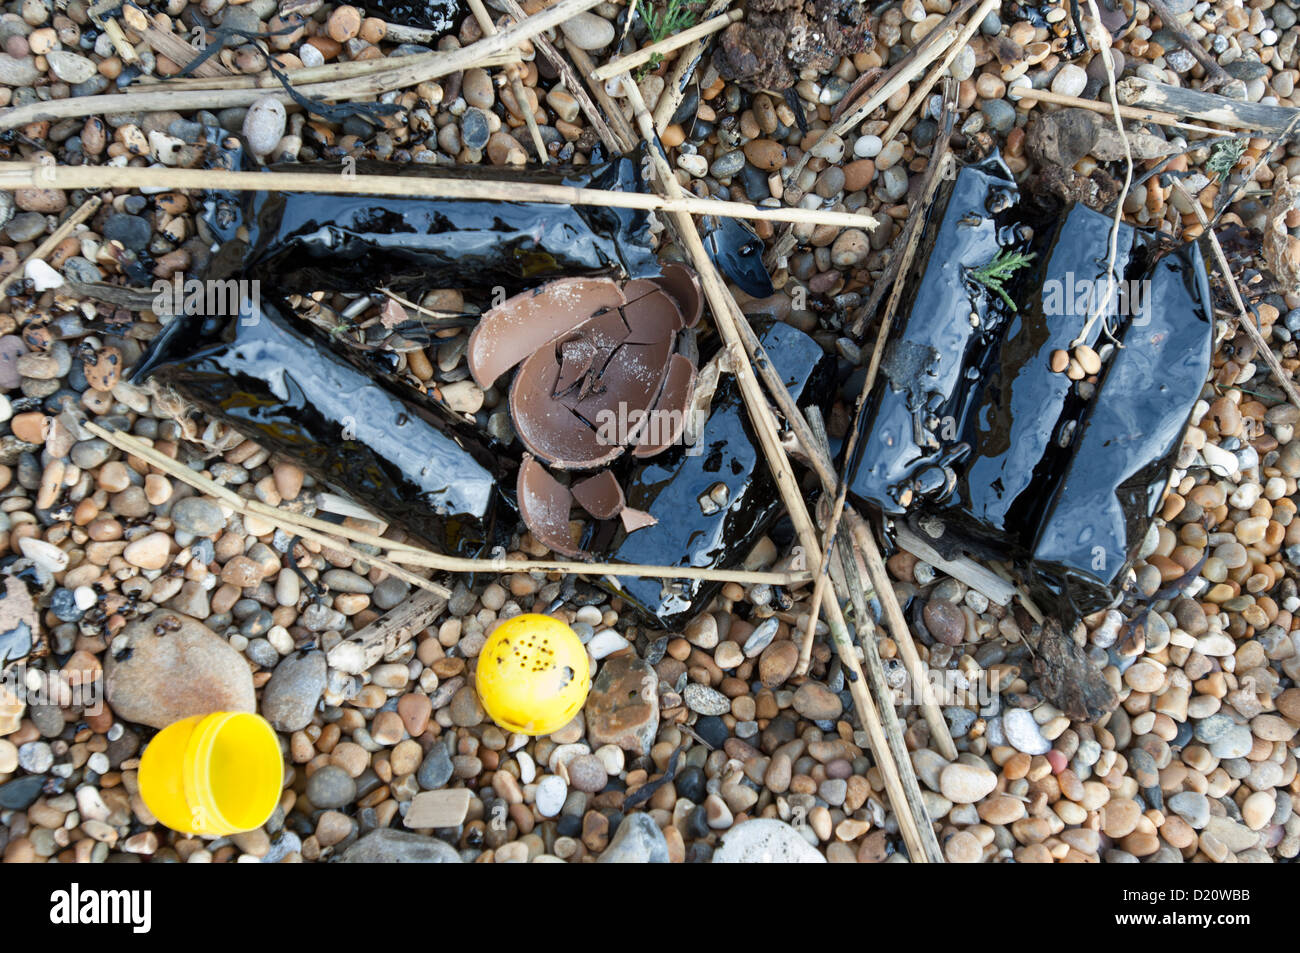 Los resultados de la contaminación por petróleo en buques de un cargamento de dulces y chocolates Foto de stock